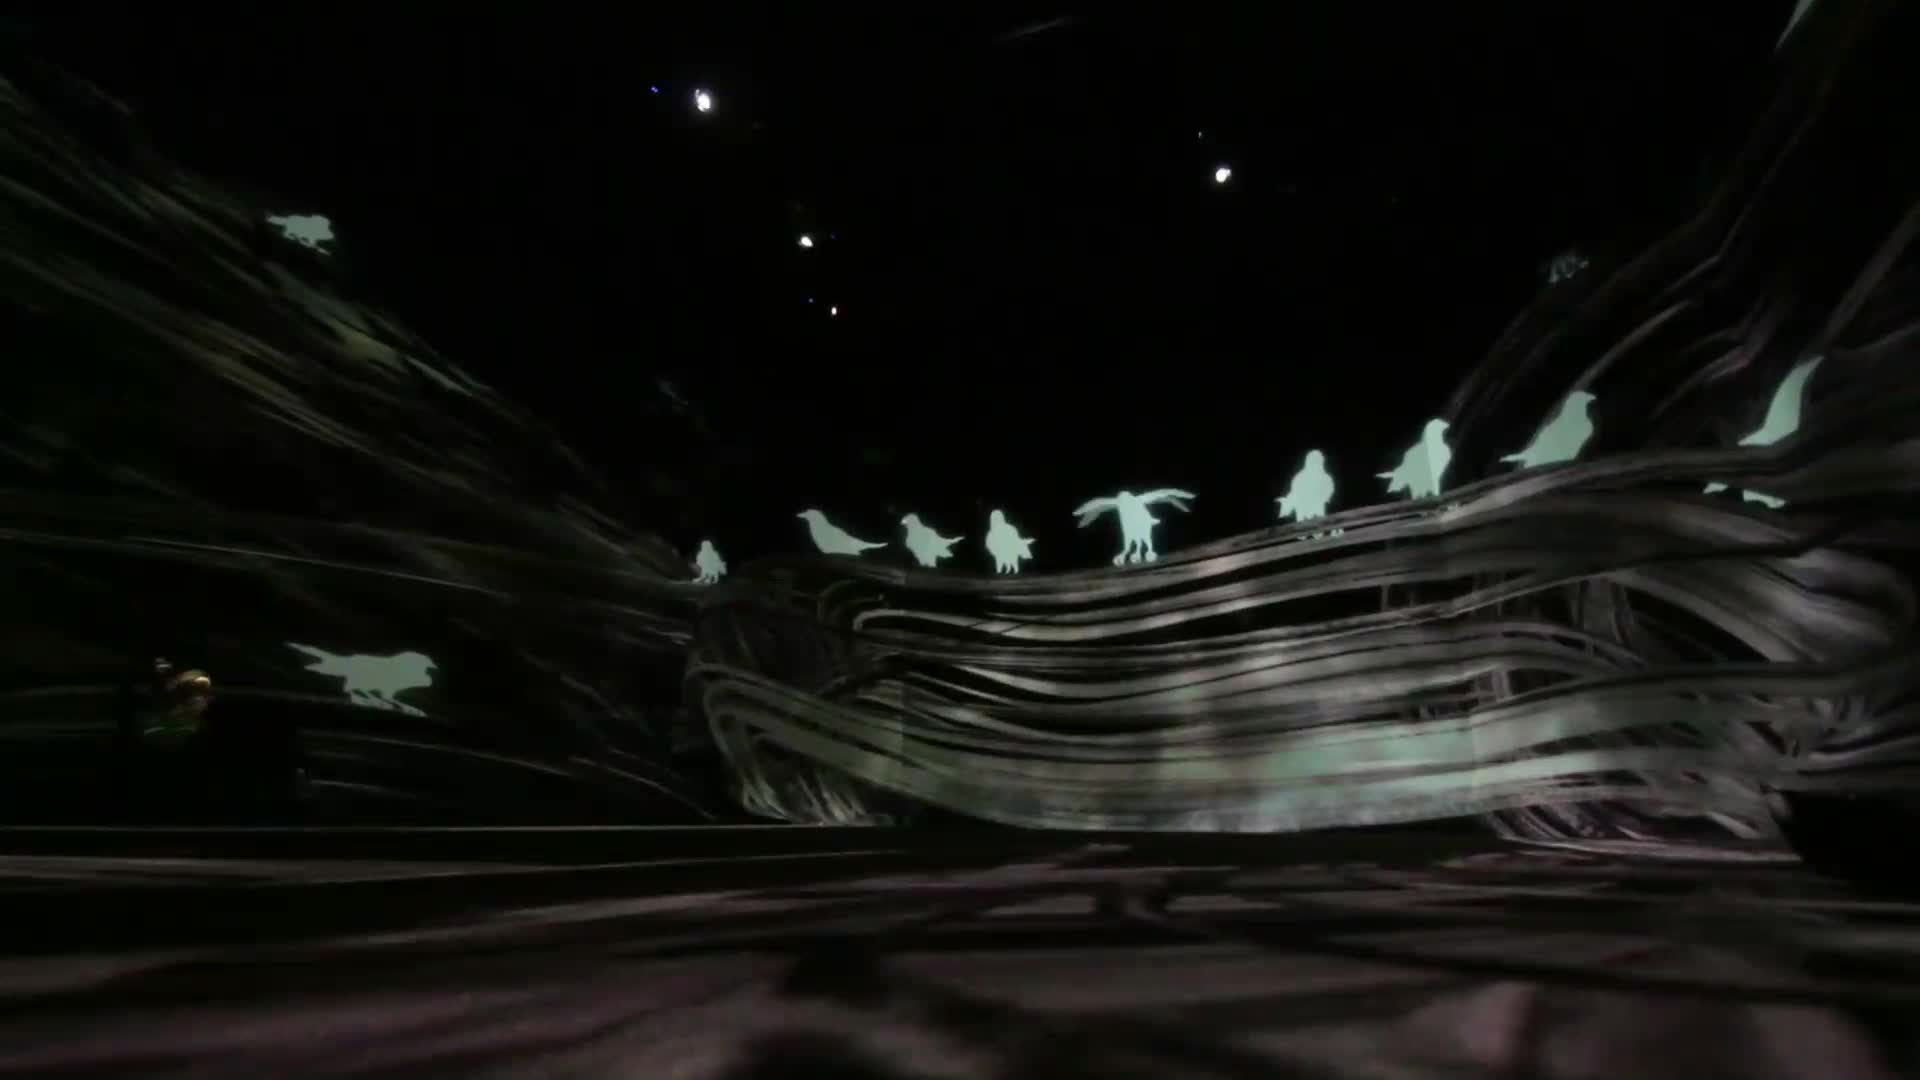 Amos Rex美术馆的光绘投影